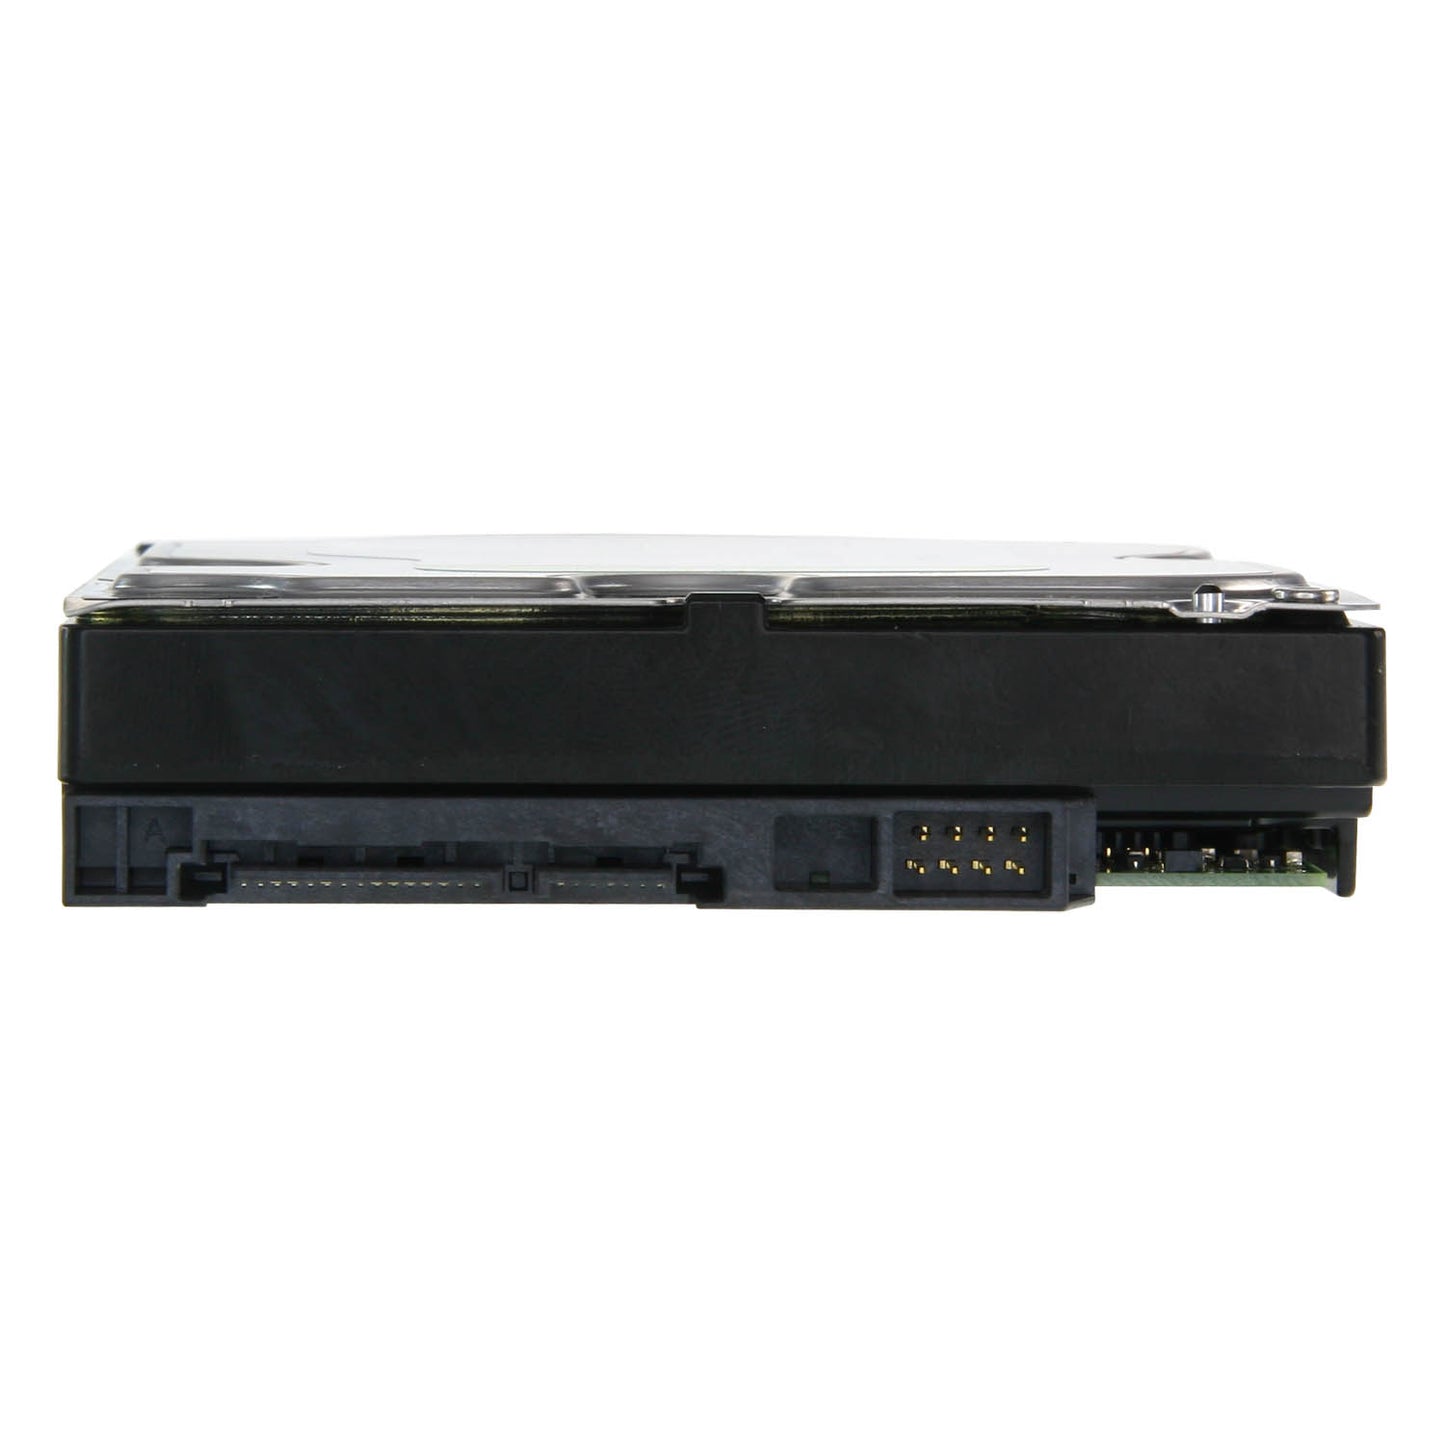 Hard Disk - Capacità 2 TB - Interfaccia SATA 6 GB/s - Modello WD20PURX - Speciale per Videoregistratori - Da solo o installato su DVR